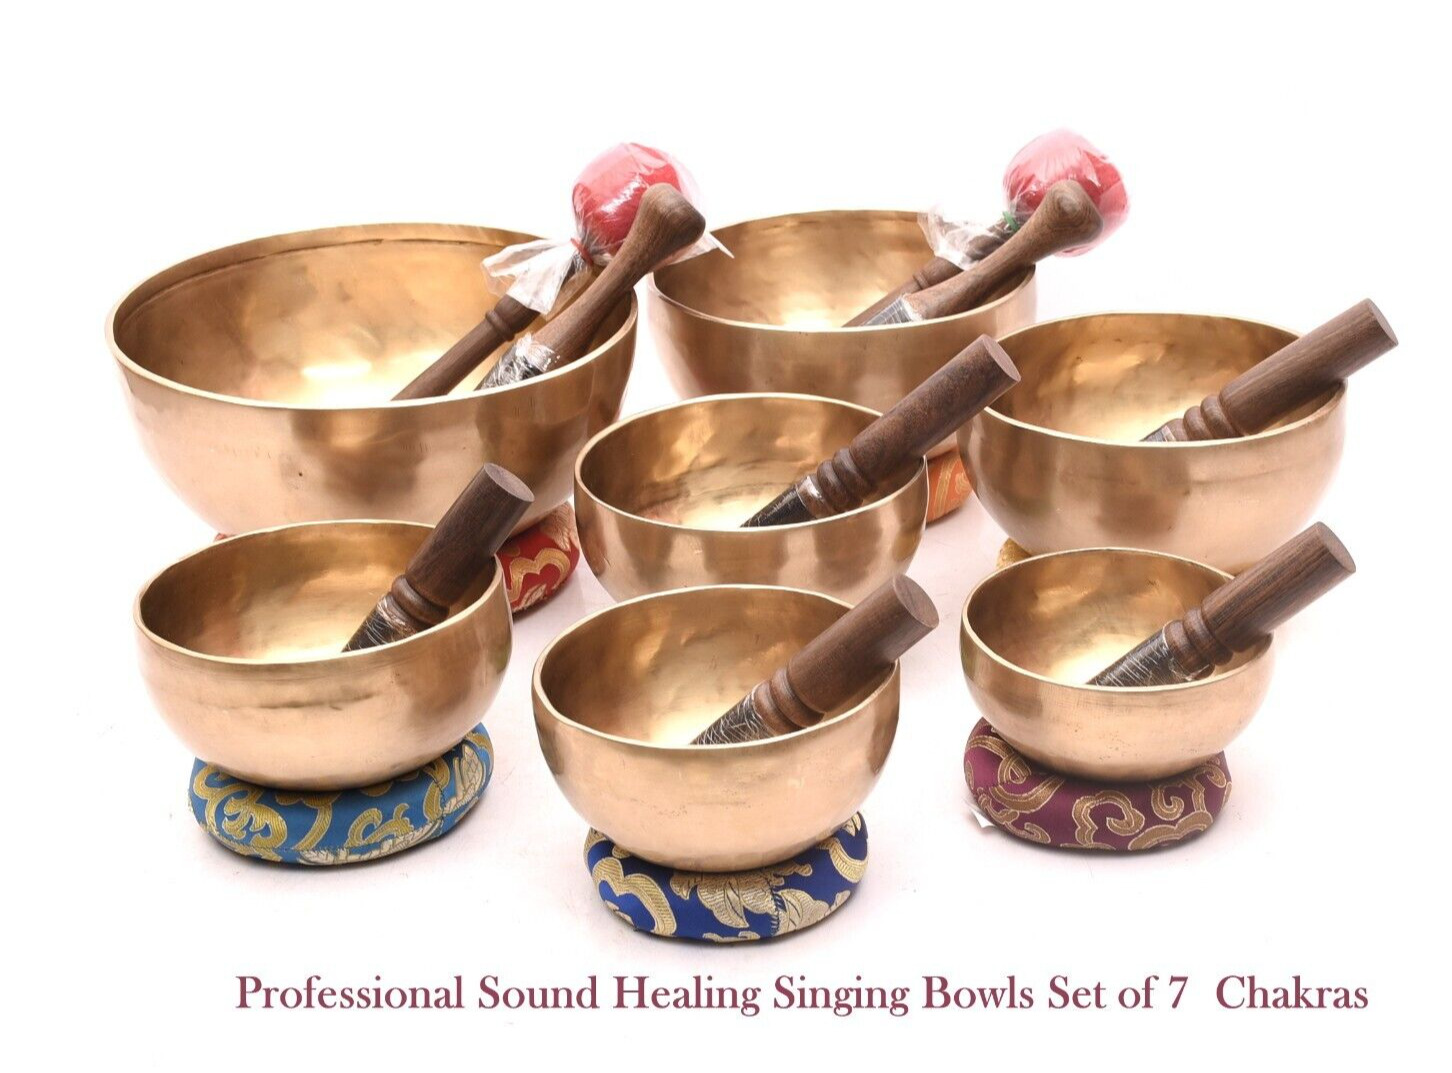 Tibetan Singing Bowl set of 7 - 4 inch to 8 inches chakra singing bowl seven set